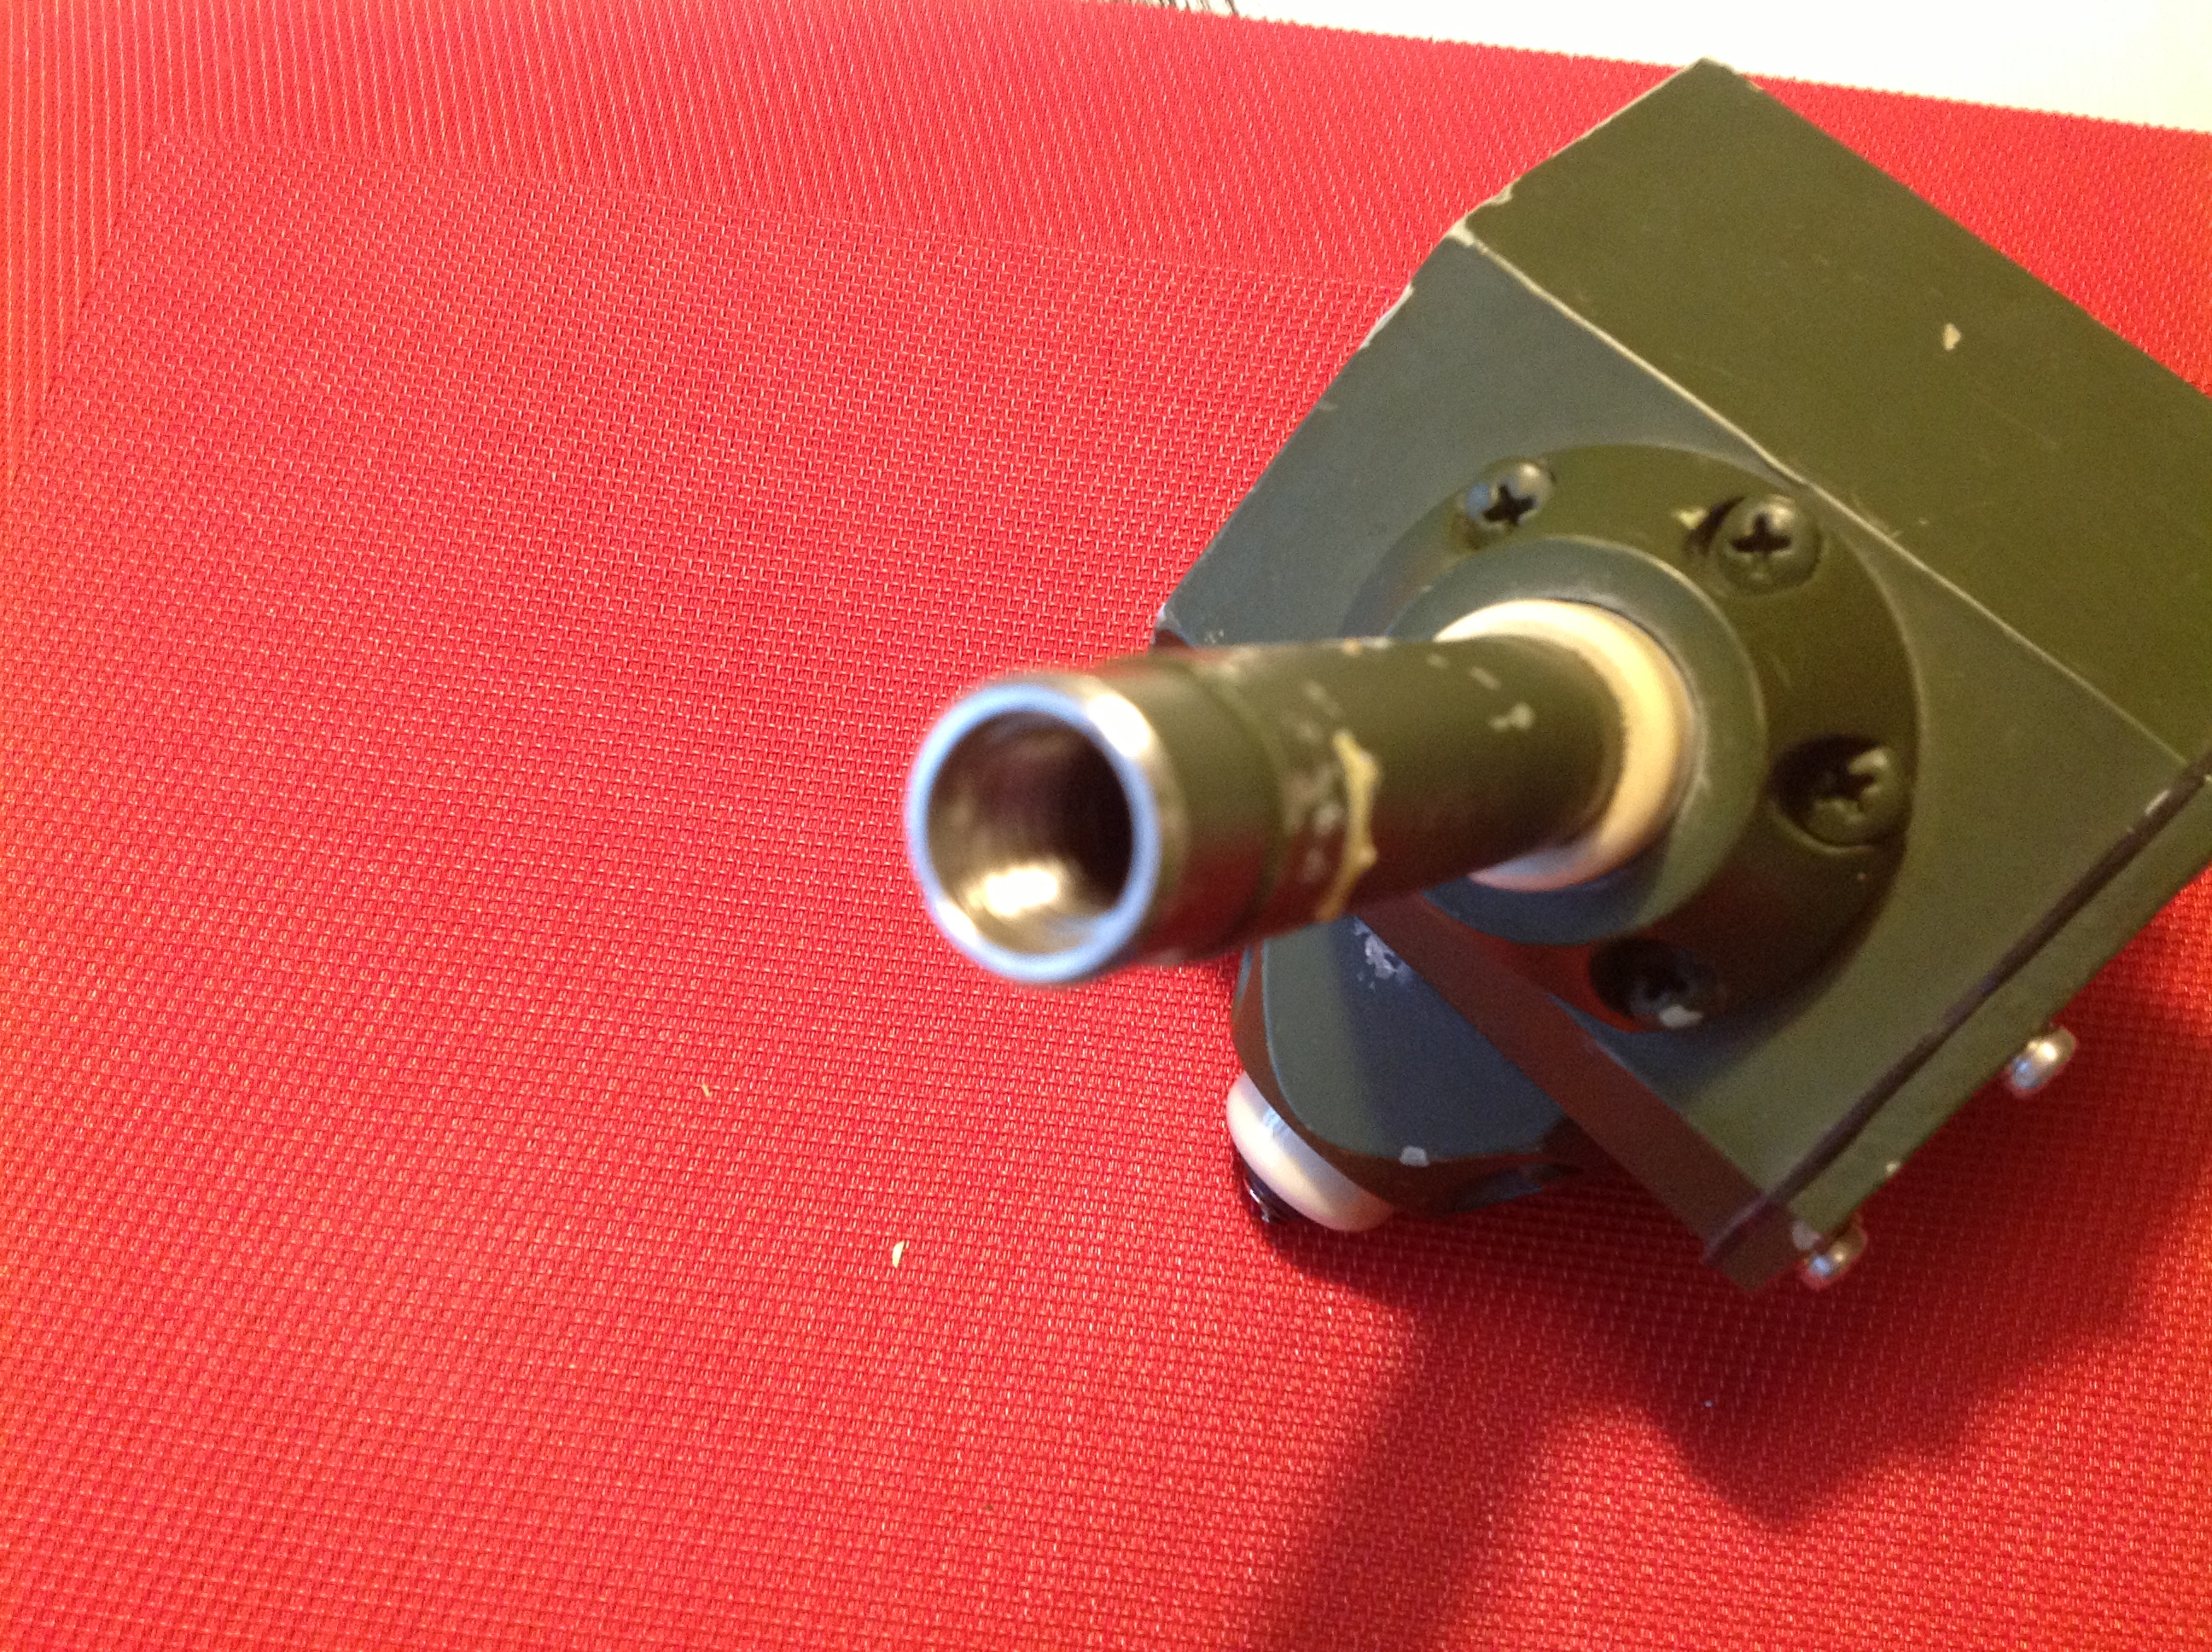 Rohde &amp; Schwarz HF-Empfangsantenne / HF-Receiving Antenna HA 105/1/50